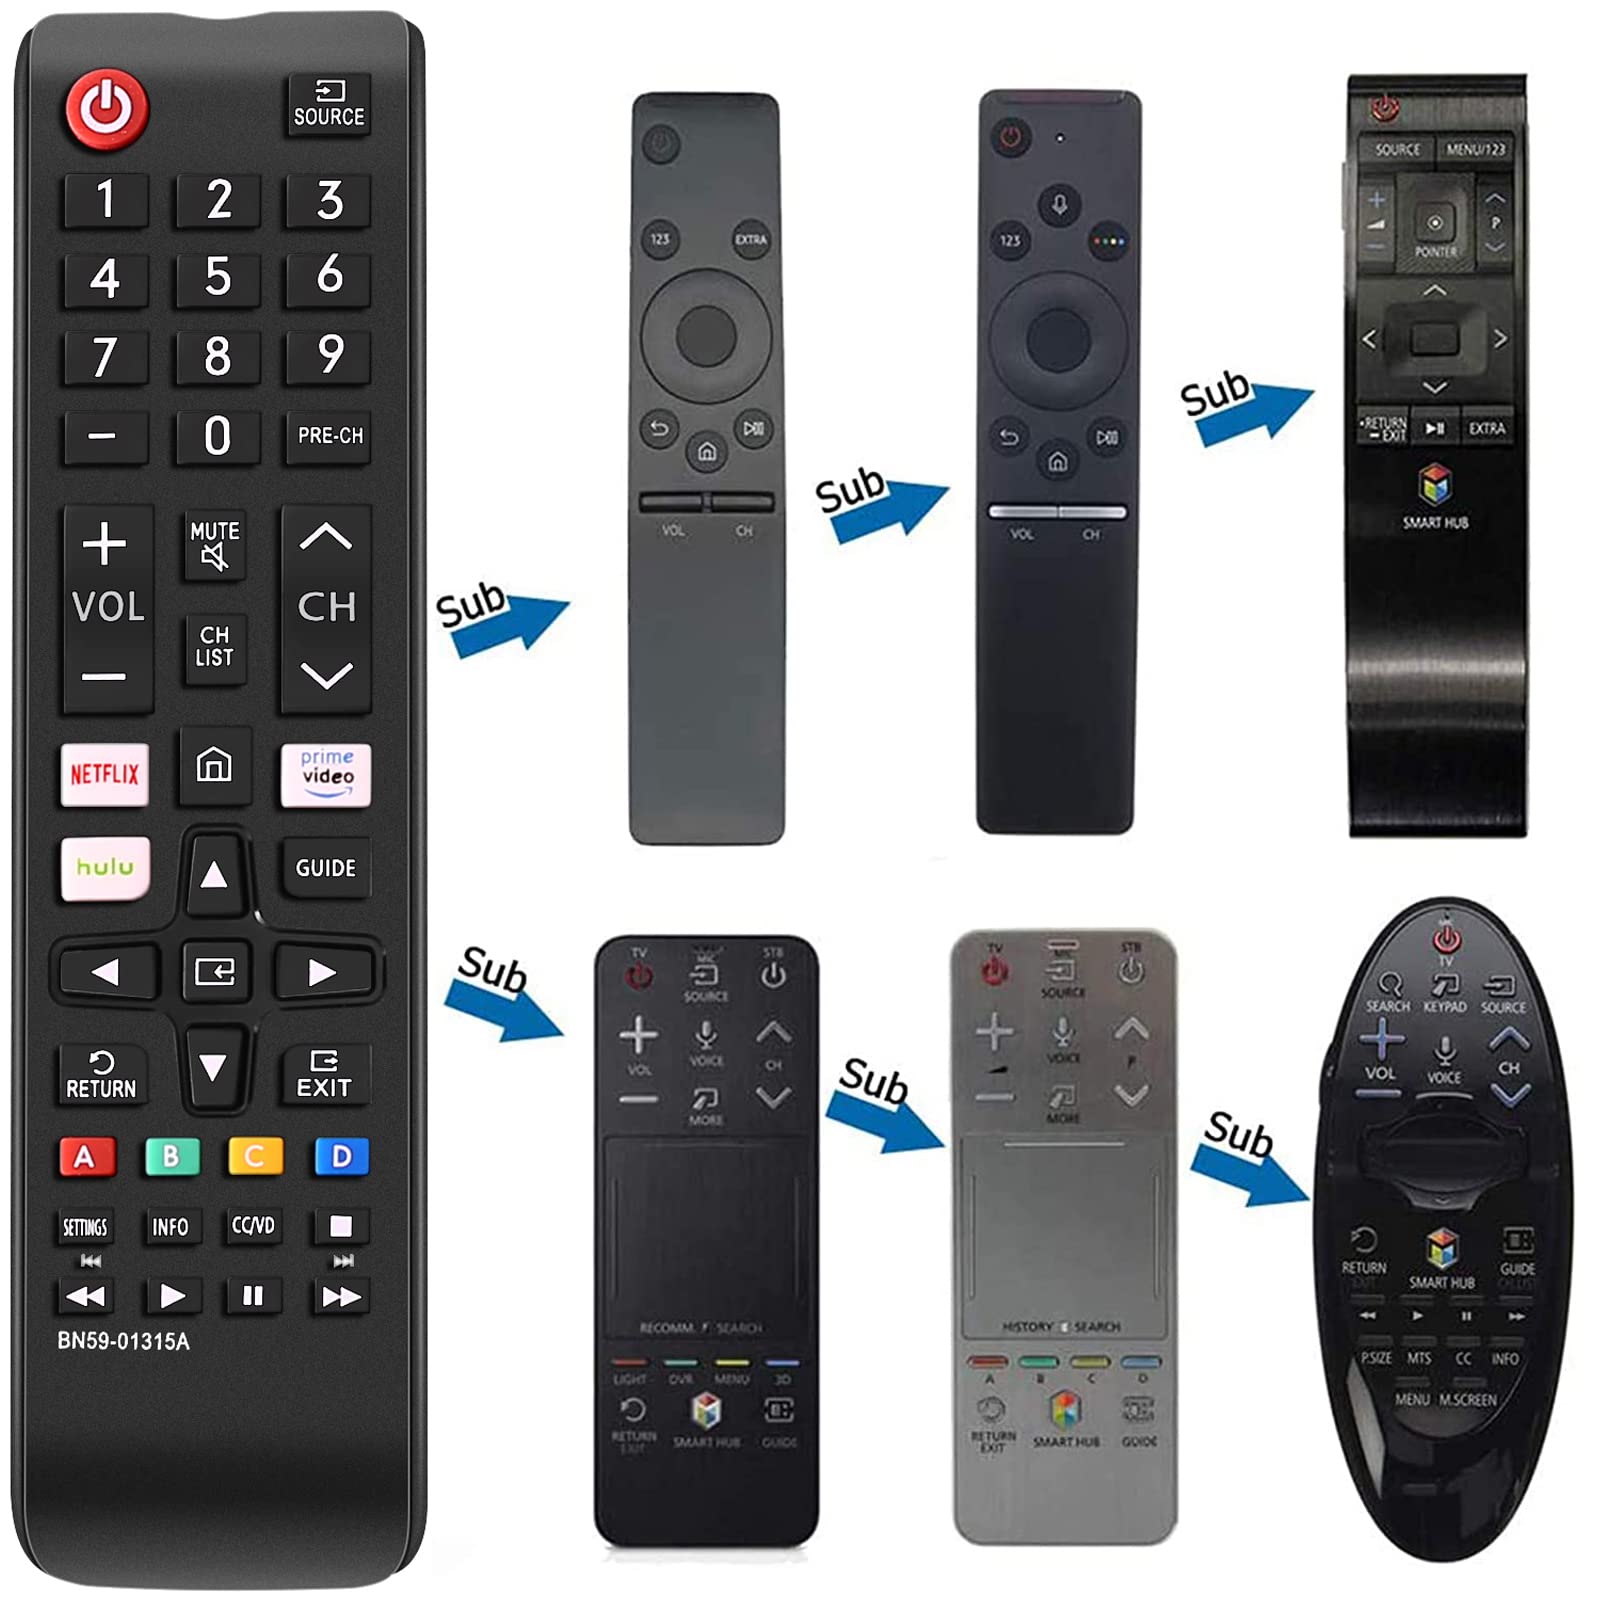 Telecomando universale più nuovo tutti i telecomandi TV Samsung Compatibile con tutti i modelli di Smart TV 3D LCD LED HDTV Samsung BN59-01315A